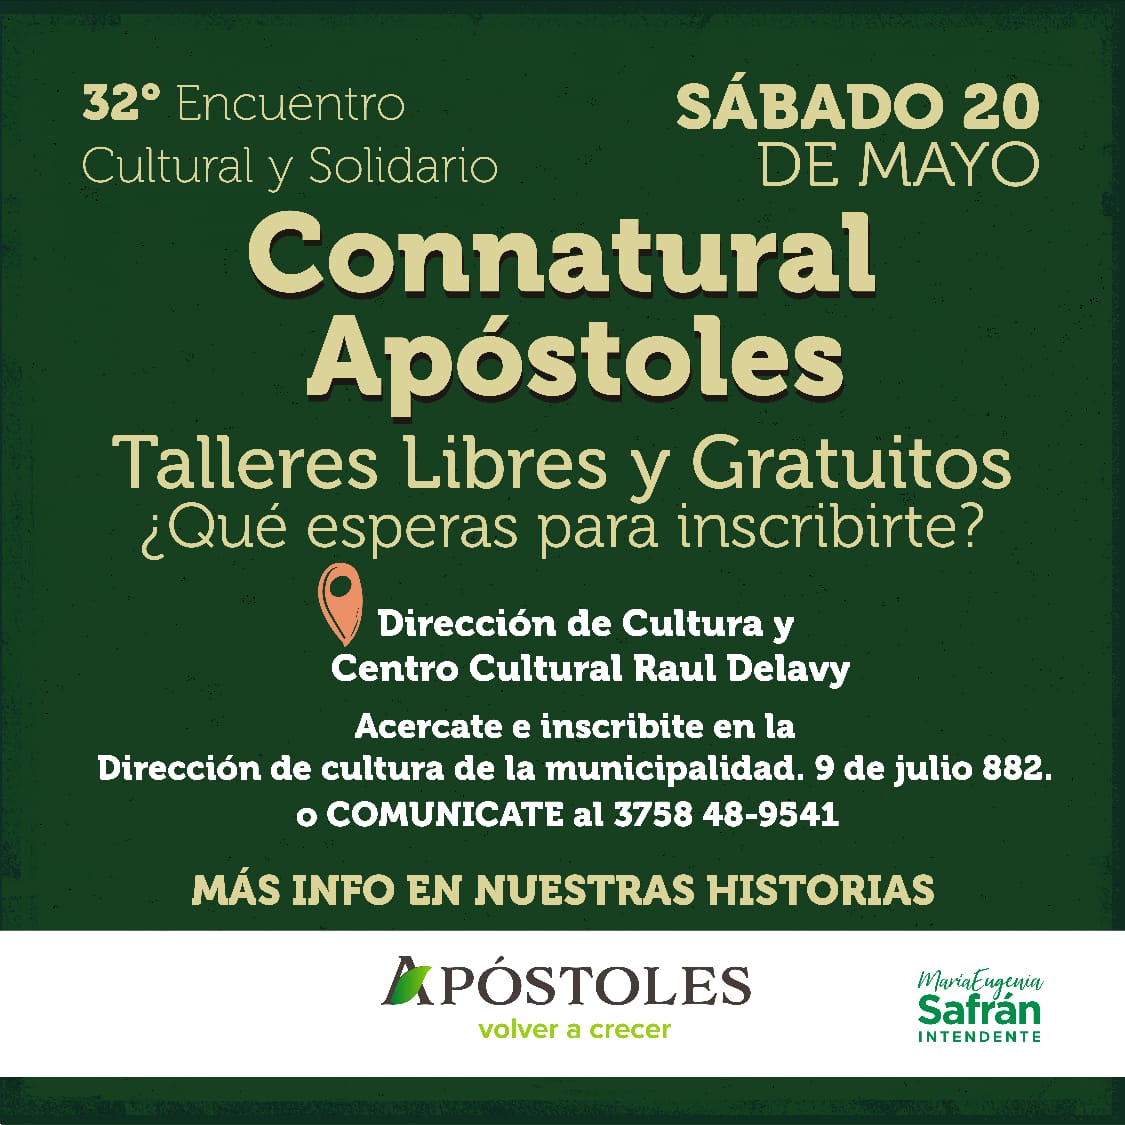 Invitan al 32do Encuentro Cultural y Solidario Connatural Apóstoles imagen-1